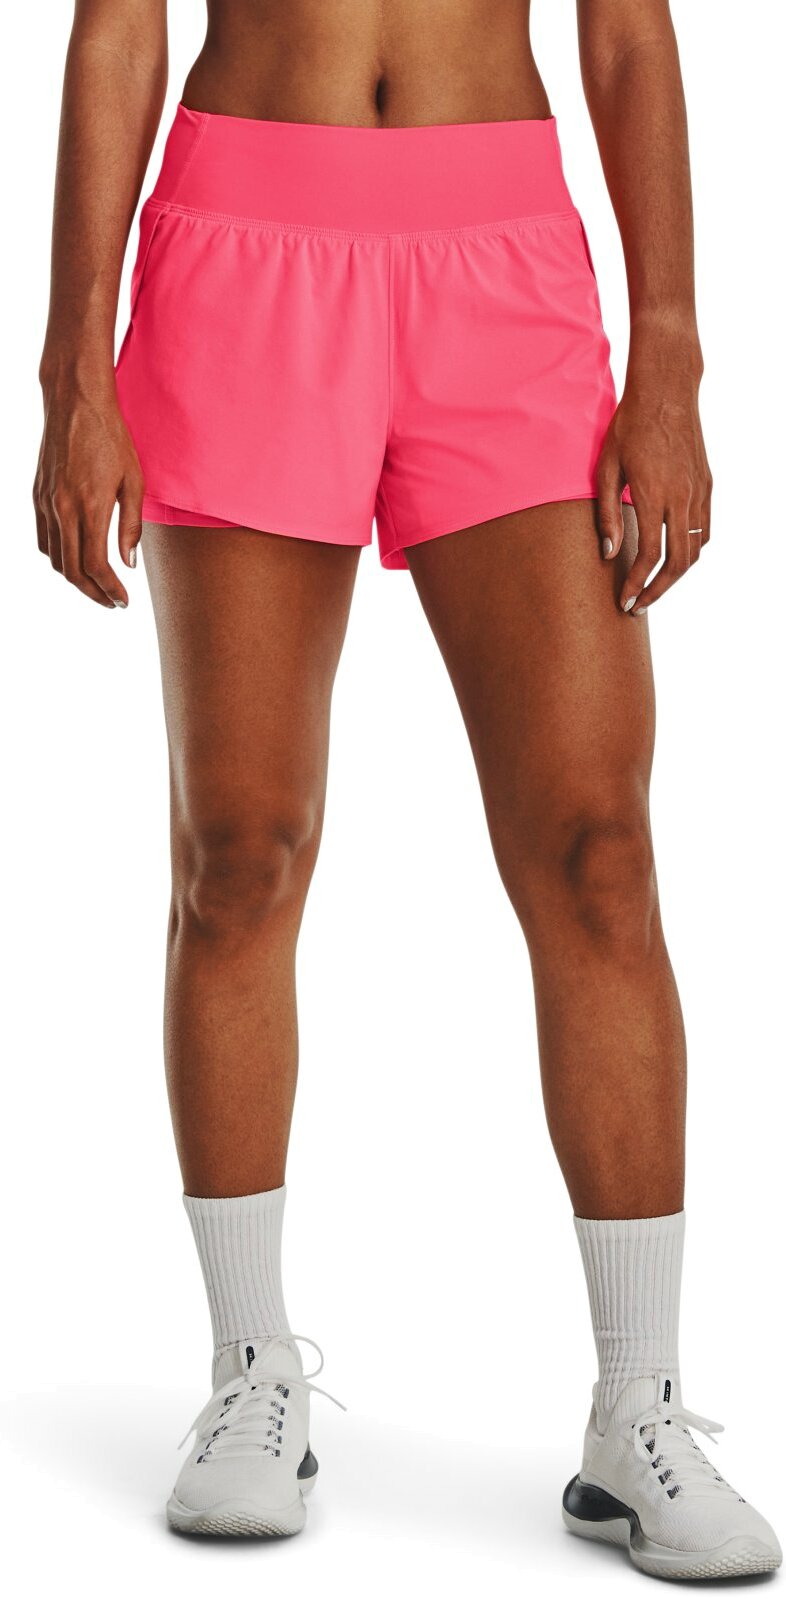 Cпортивные шорты женские Under Armour 1376936-683 розовые XL